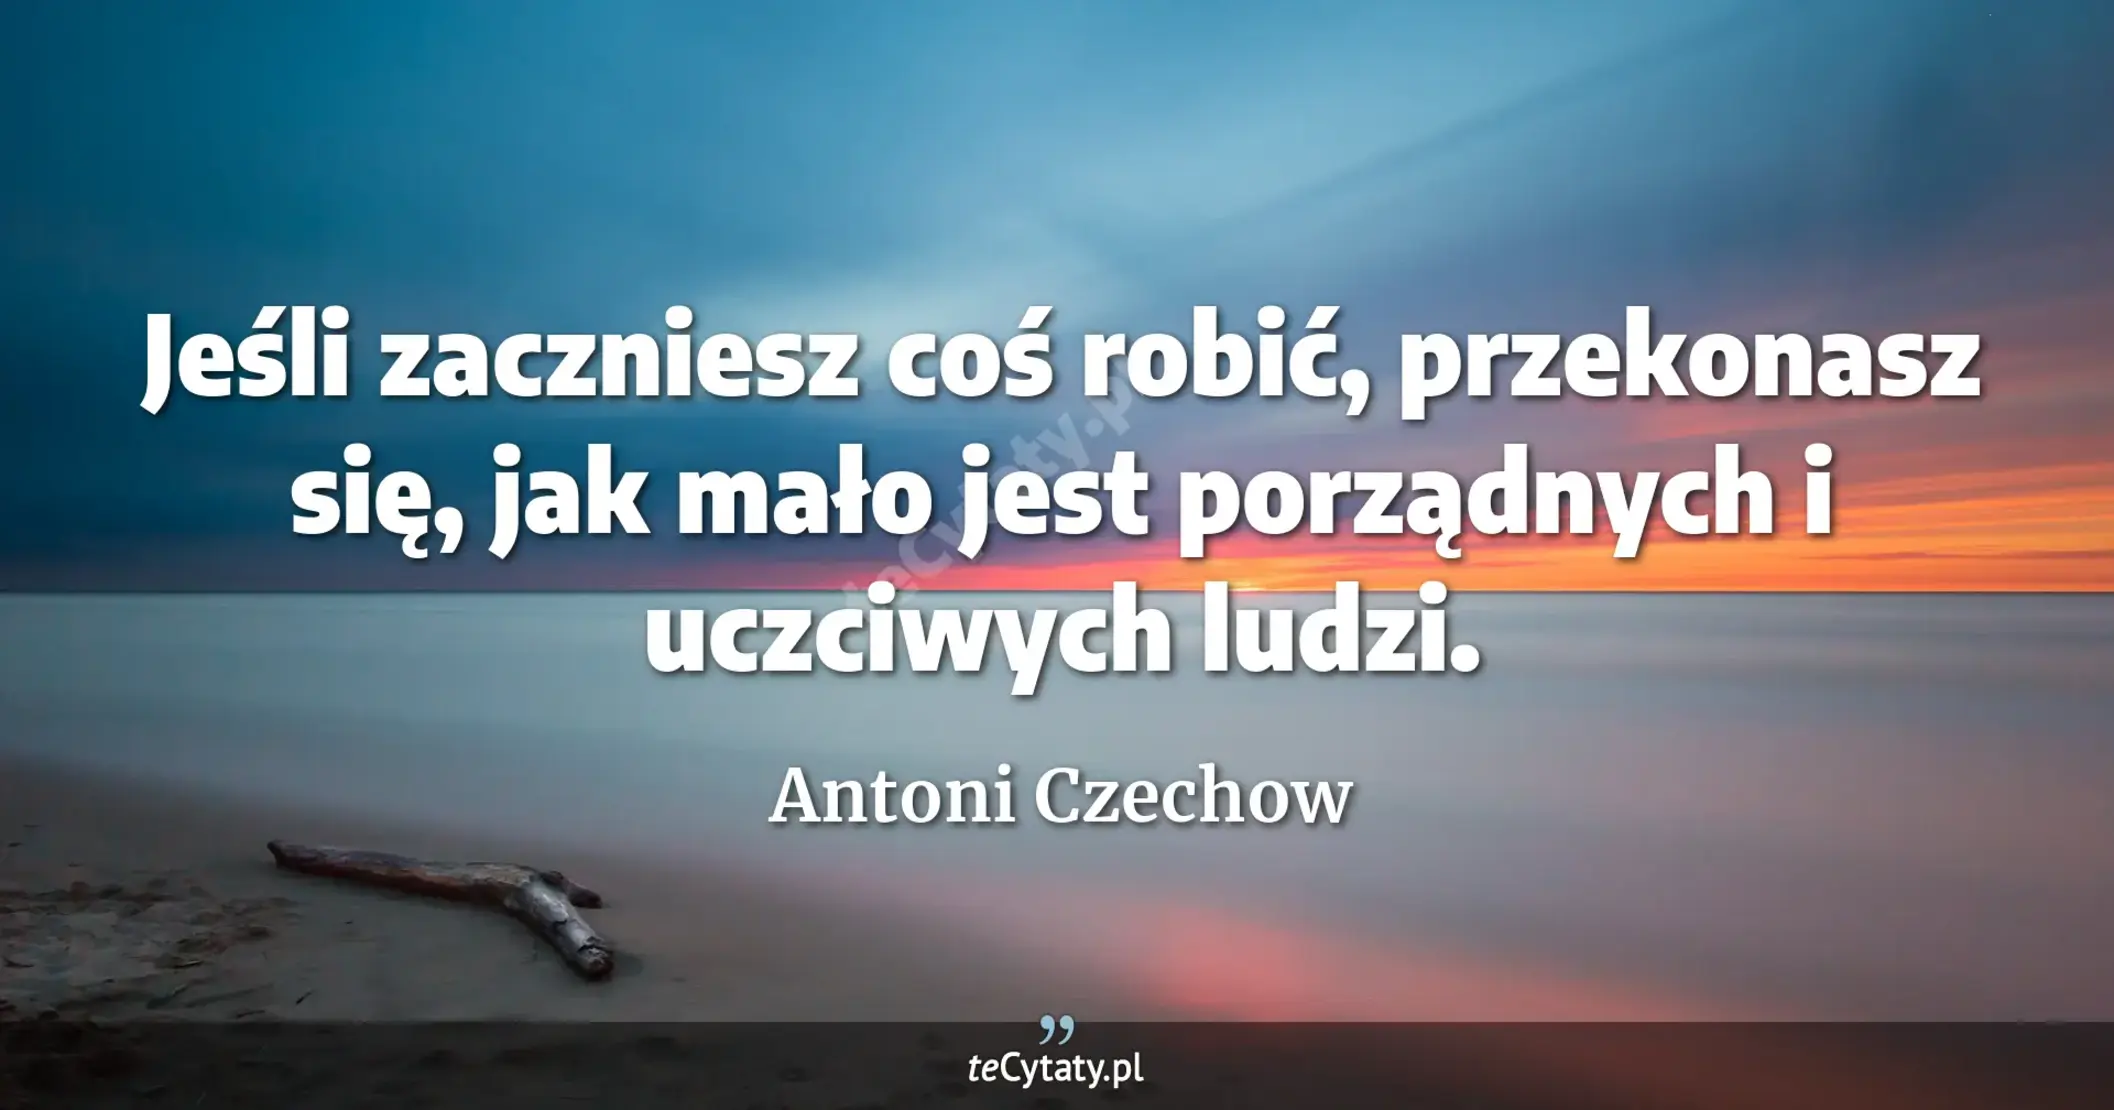 Jeśli zaczniesz coś robić, przekonasz się, jak mało jest porządnych i uczciwych ludzi. - Antoni Czechow